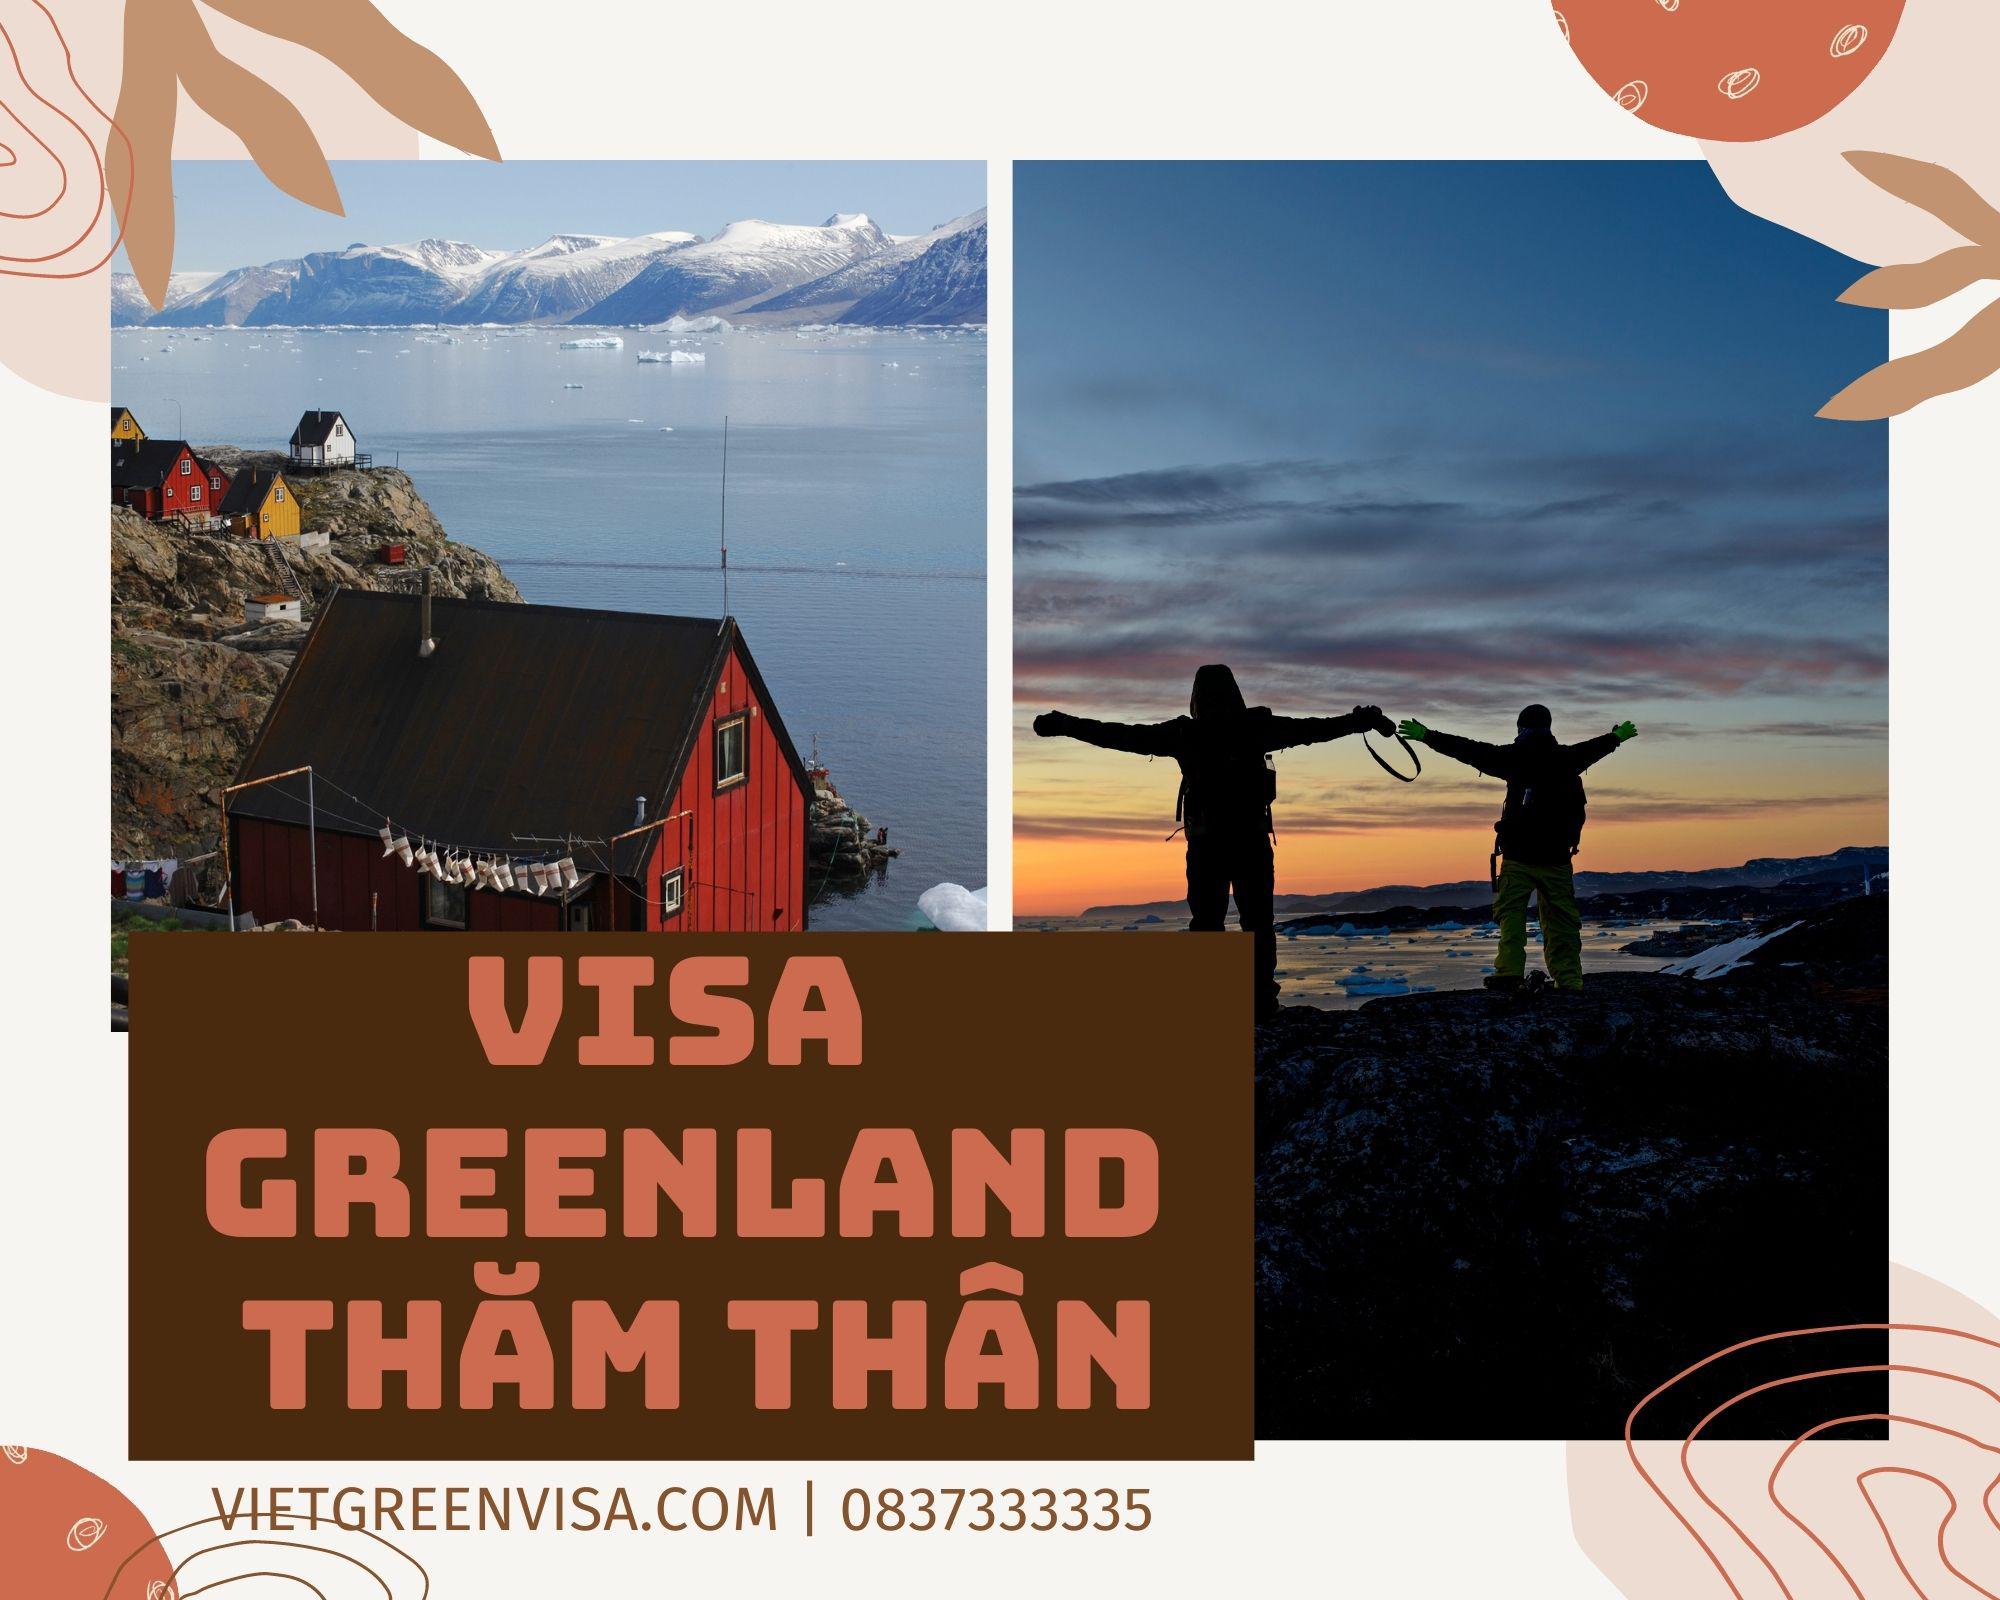 Dịch vụ visa đi Greenland diện thăm thân trọn gói, uy tín